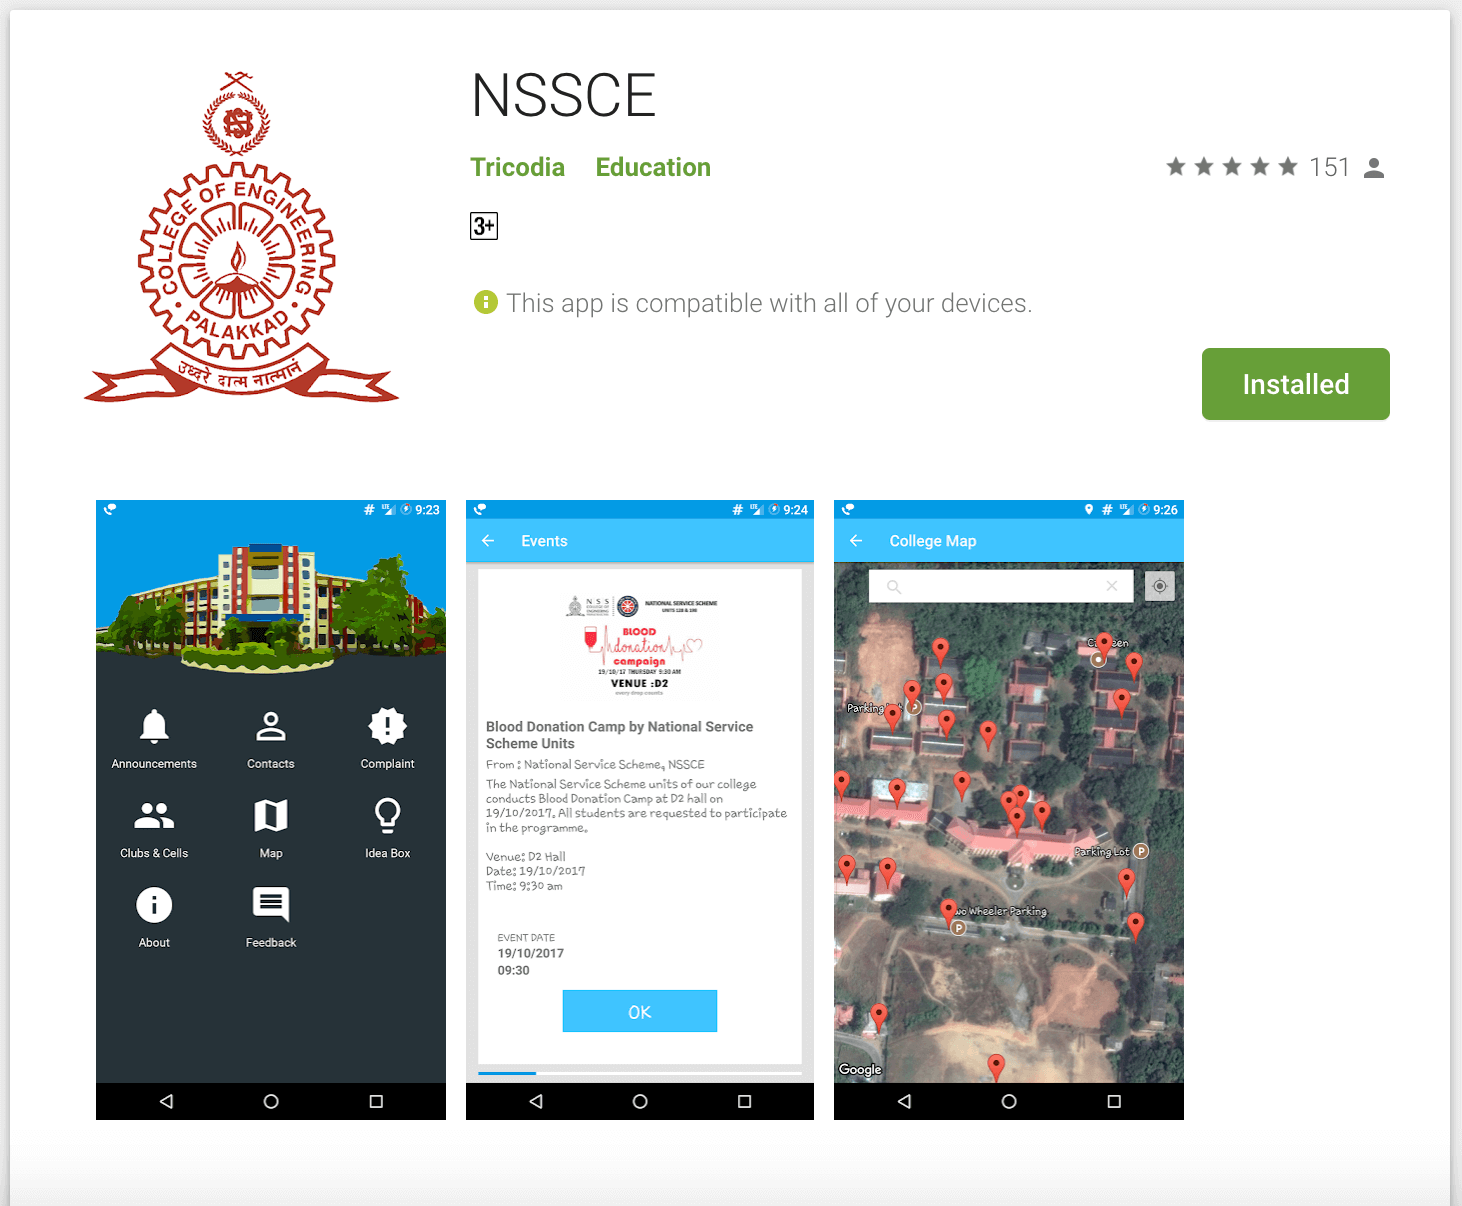 NSSCE College App Tricodia